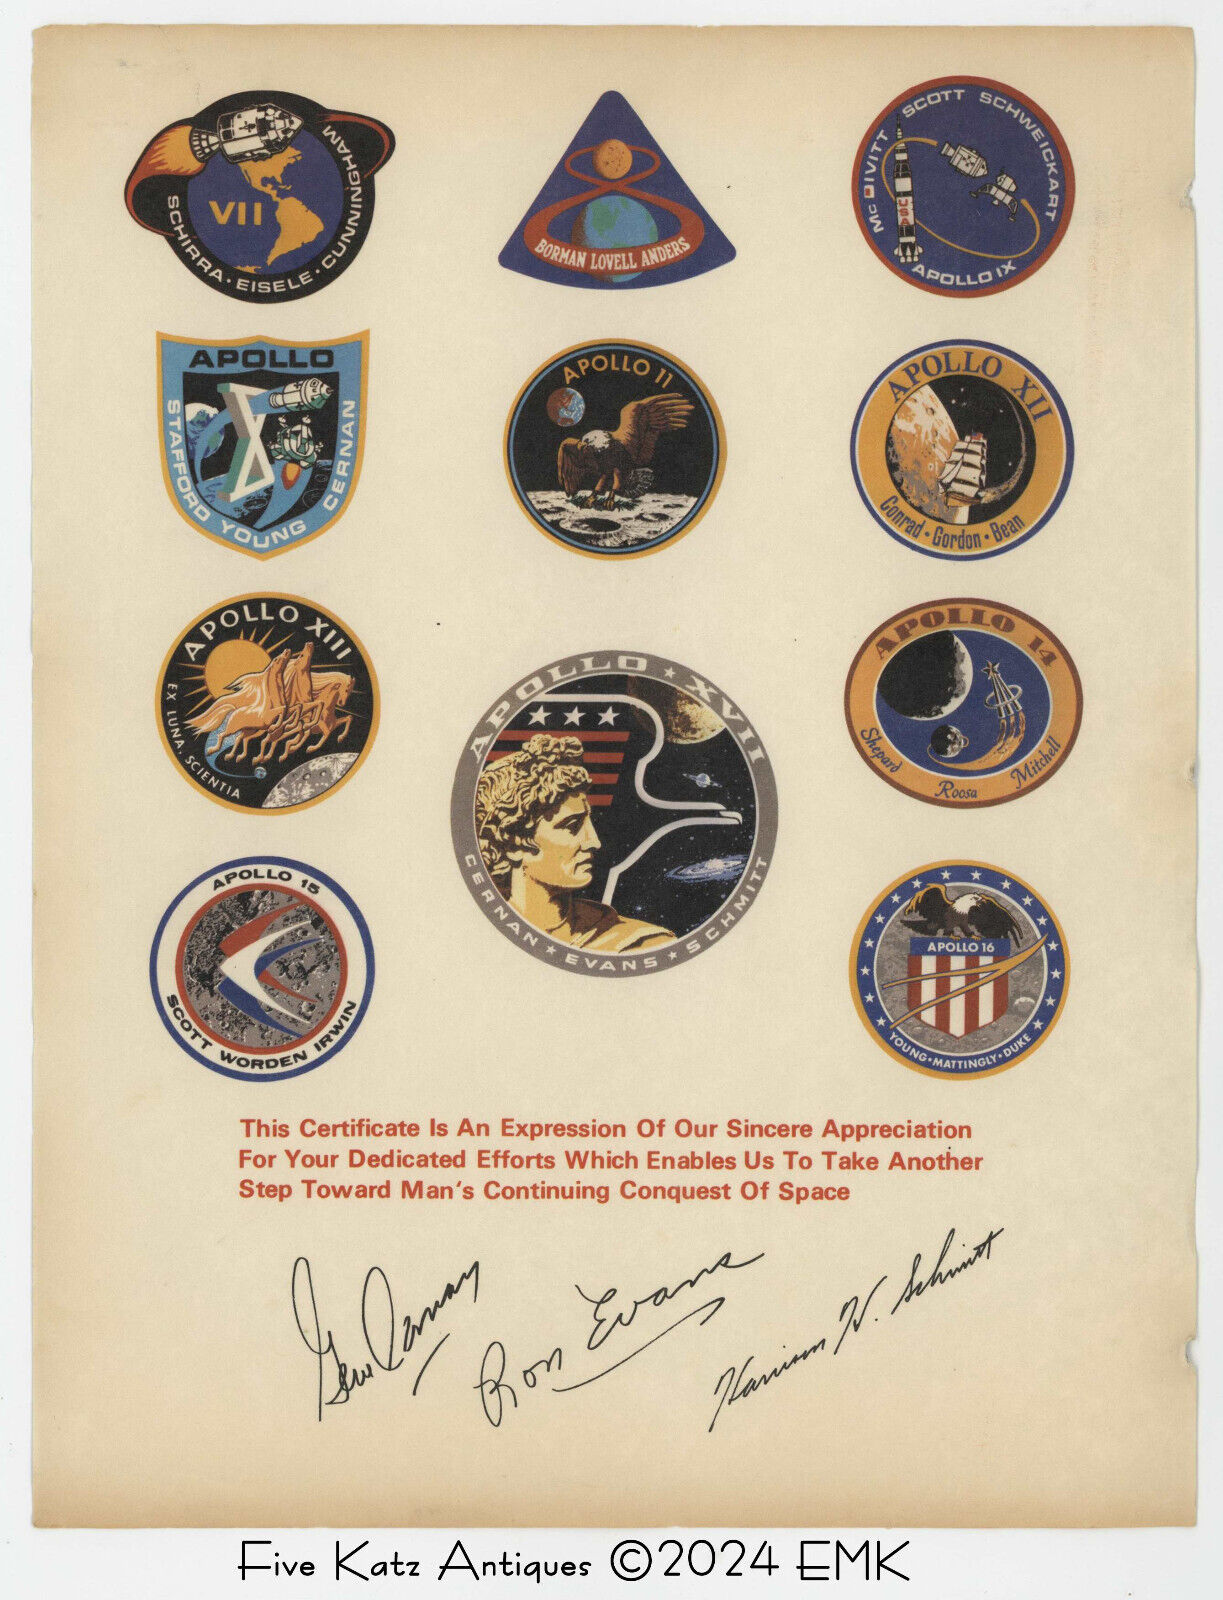 NASA Apollo 17 Employee Thank You Memorabilia Item - Original